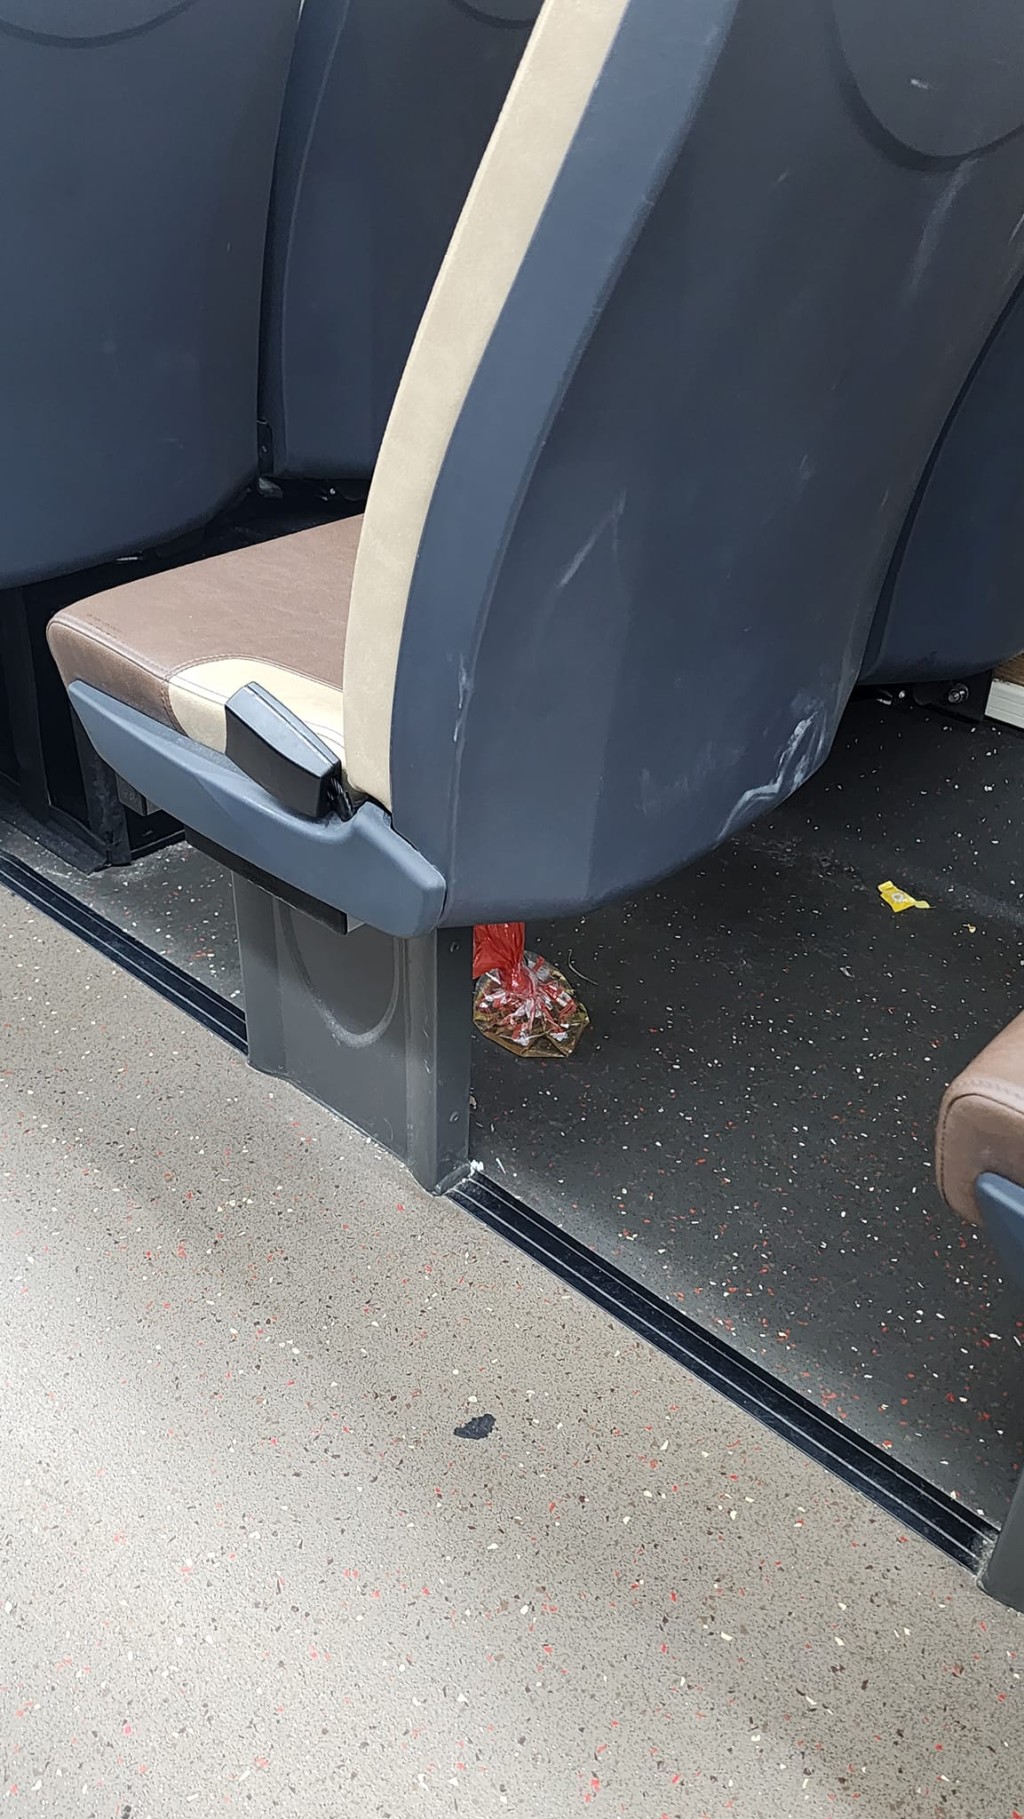 巴士椅子下有一个晶莹剔透的胶袋。网图